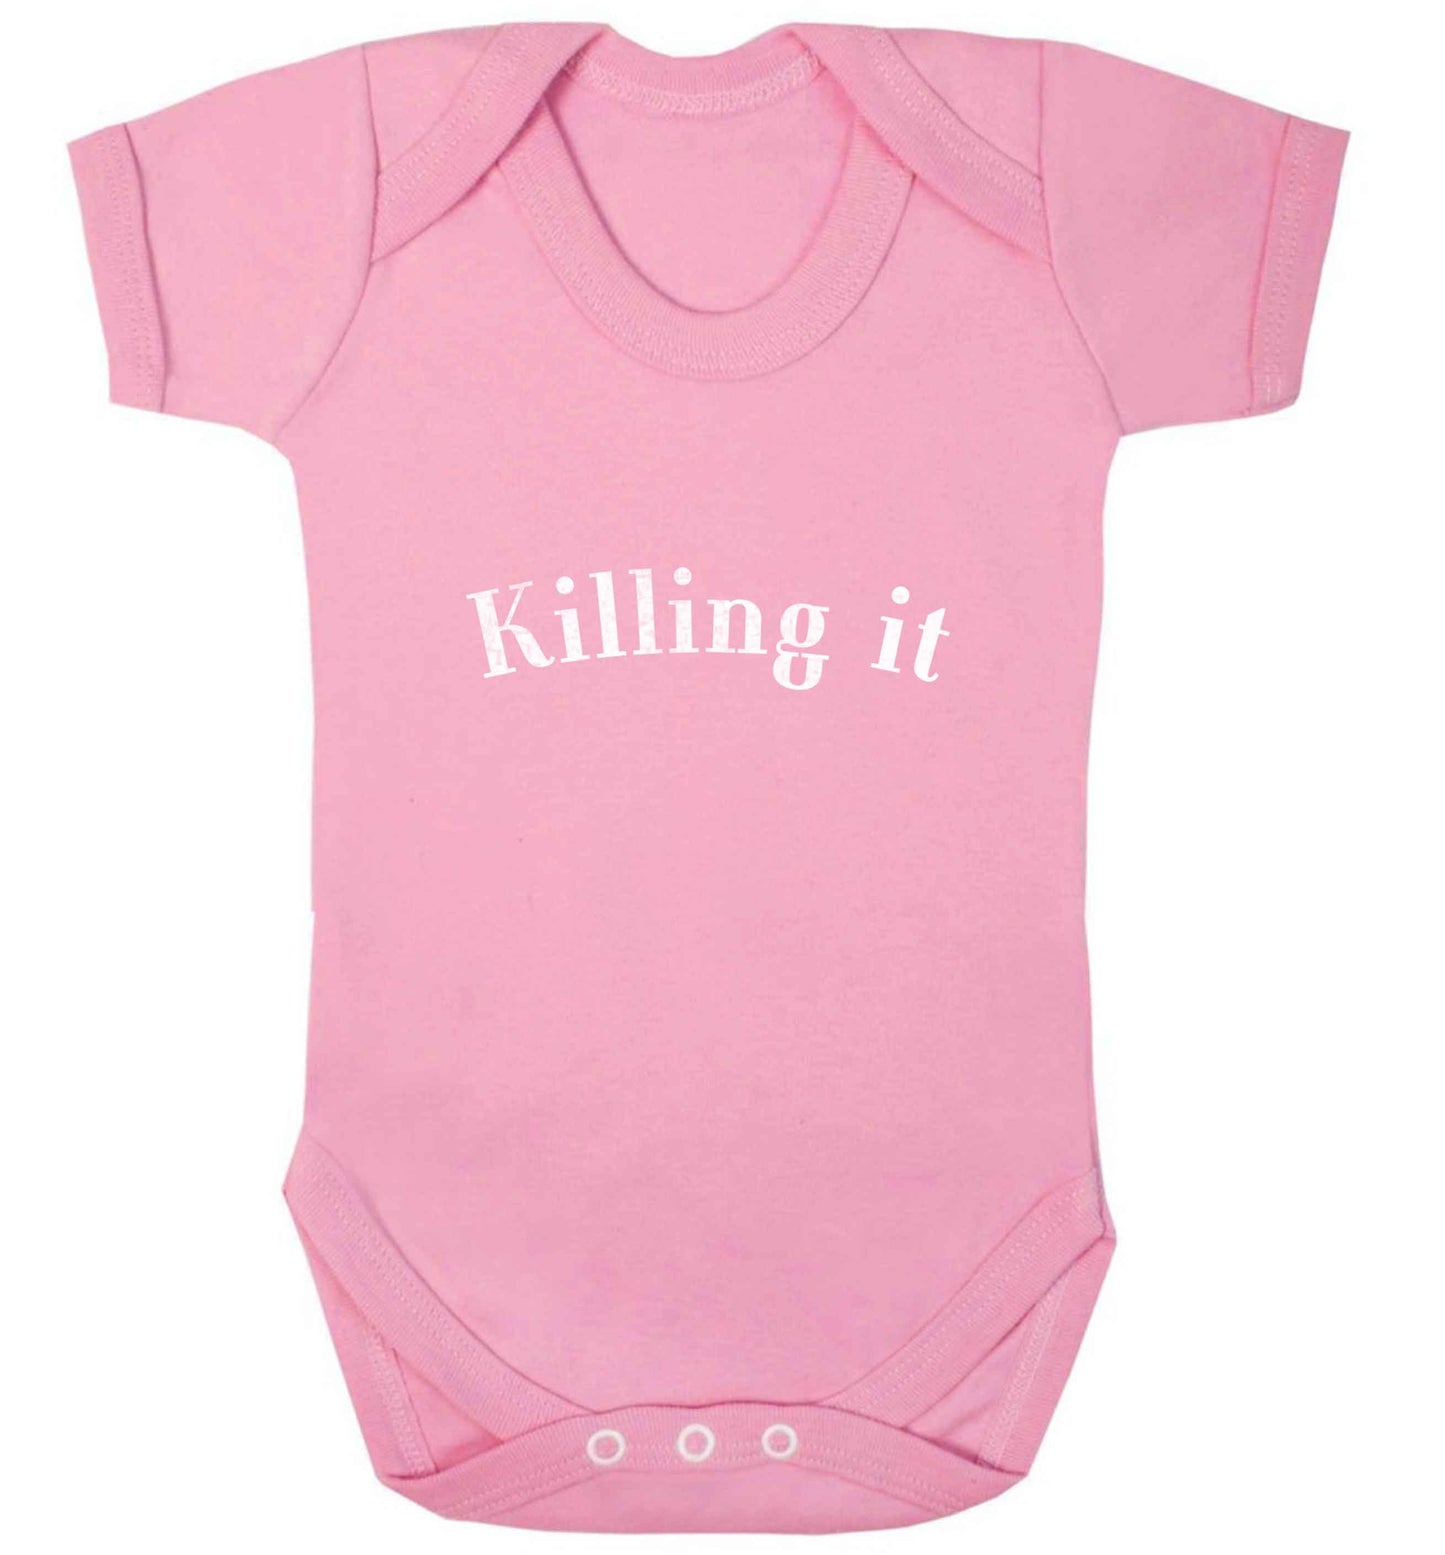 Killing it baby vest pale pink 18-24 months